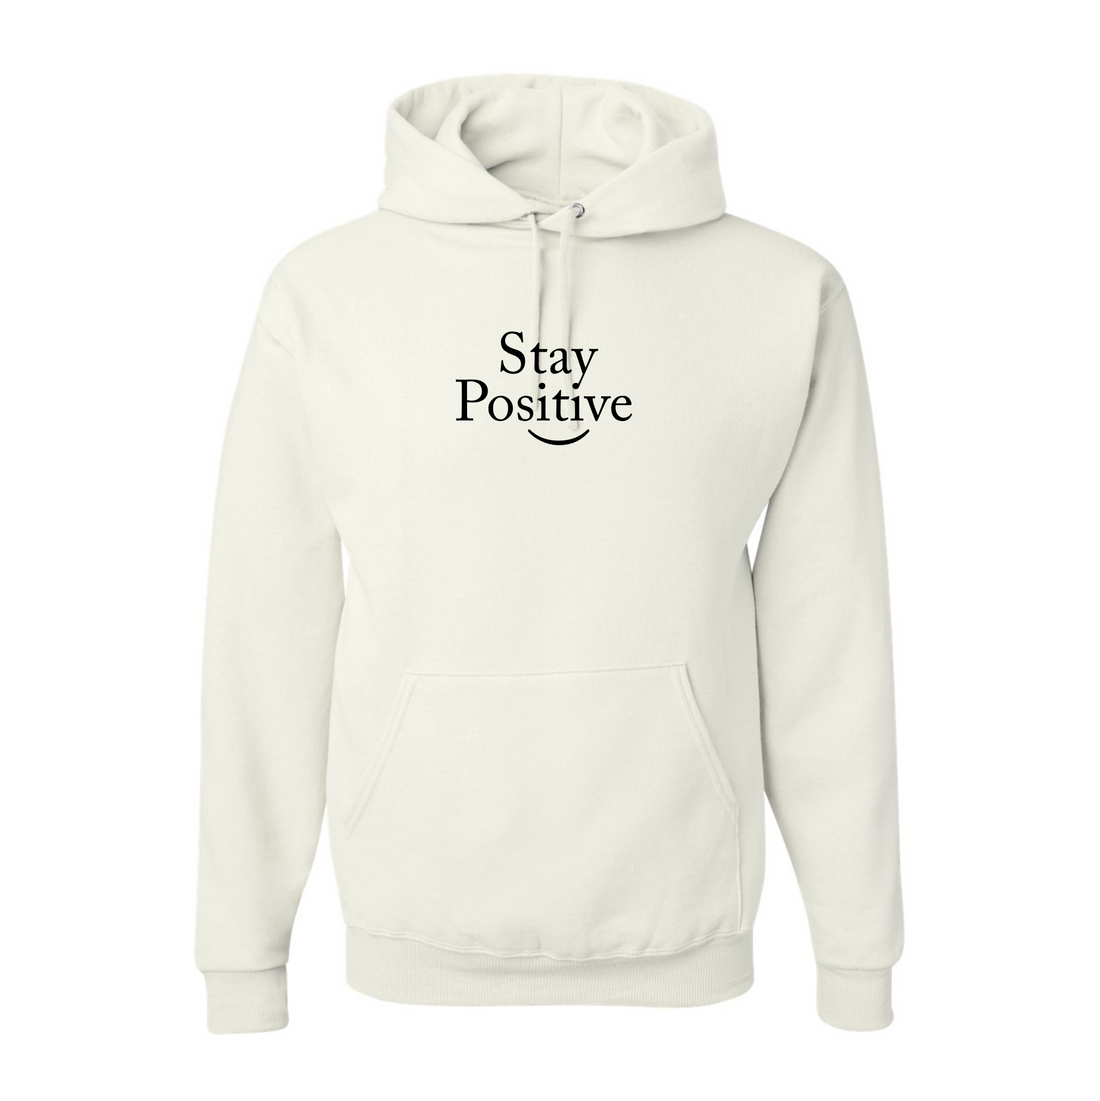 Stay Positive Hooded Sweatshirt